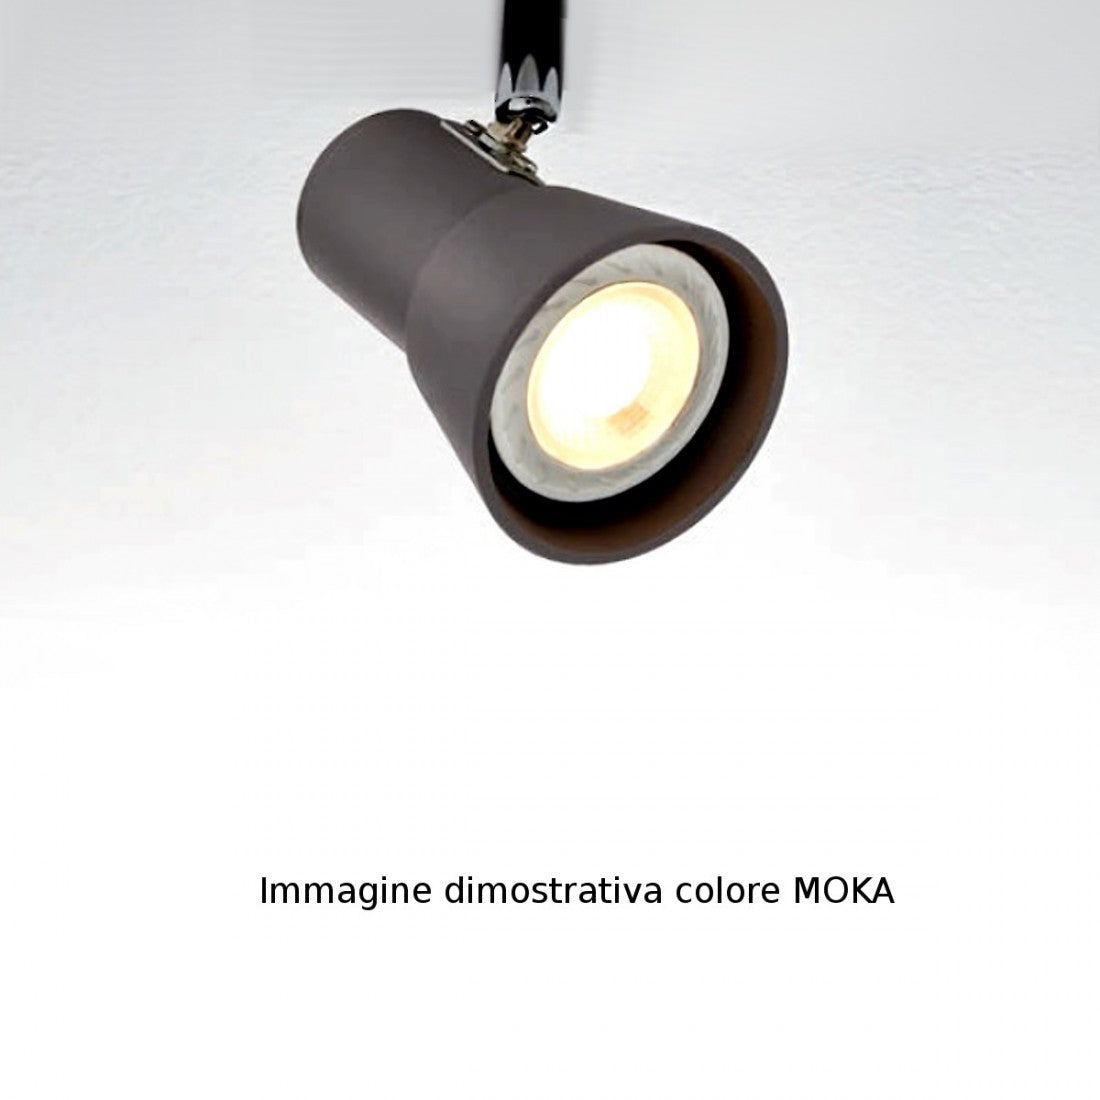 Spot illuminando torcia 4 gu10 led spot orientabili moderno metallo moka bianco interno, finitura metallo moka